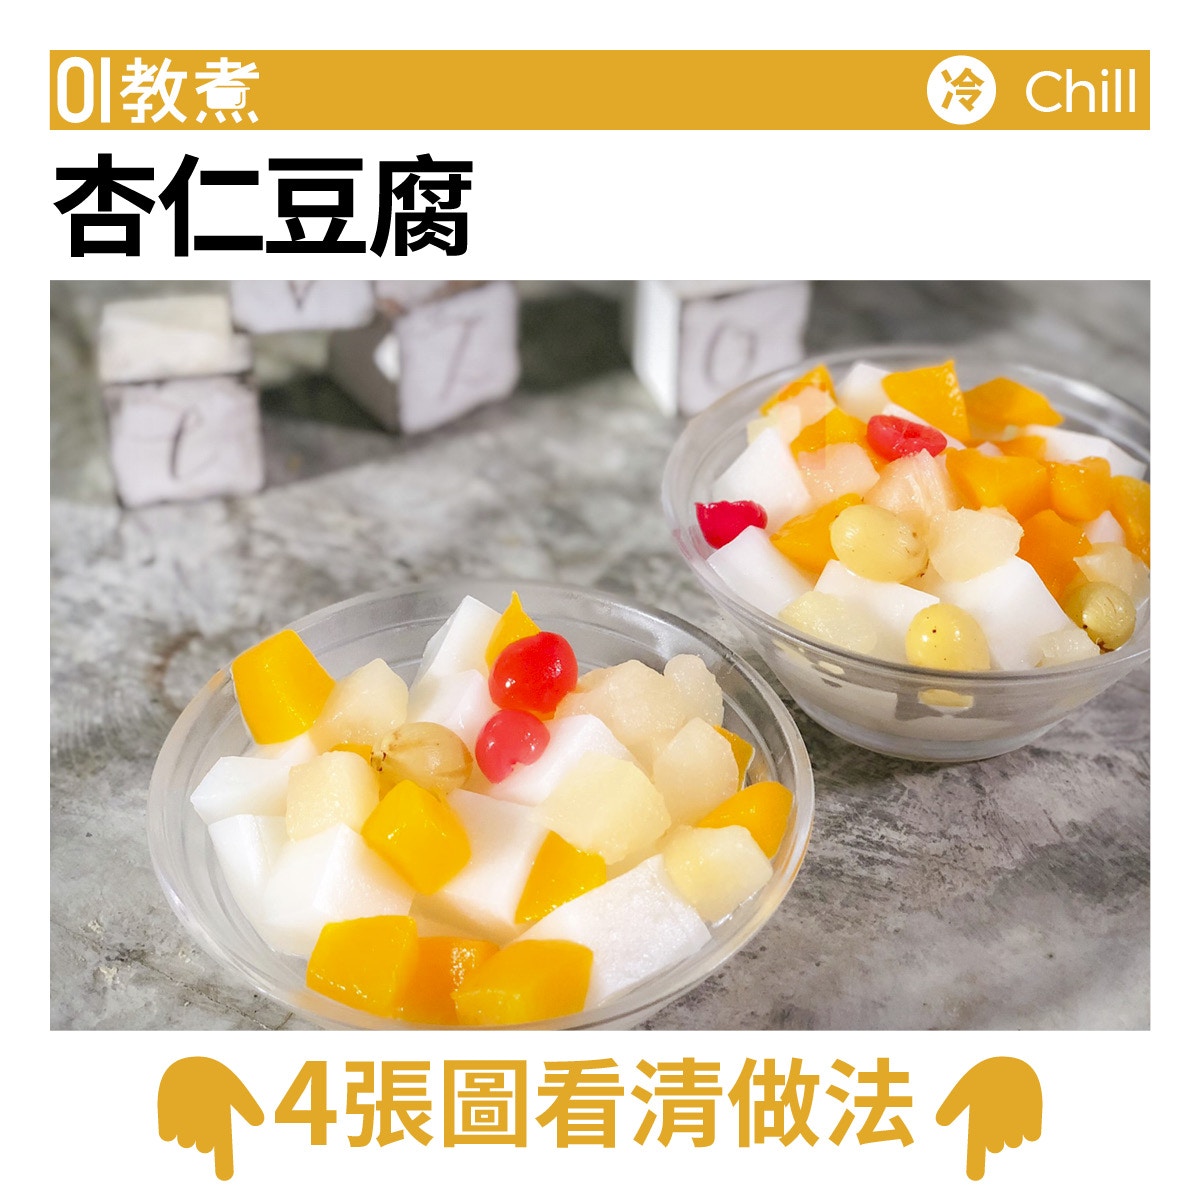 杏仁豆腐食譜 美肌潤膚懷舊甜品做法容易比磨杏霜更簡單 香港01 教煮